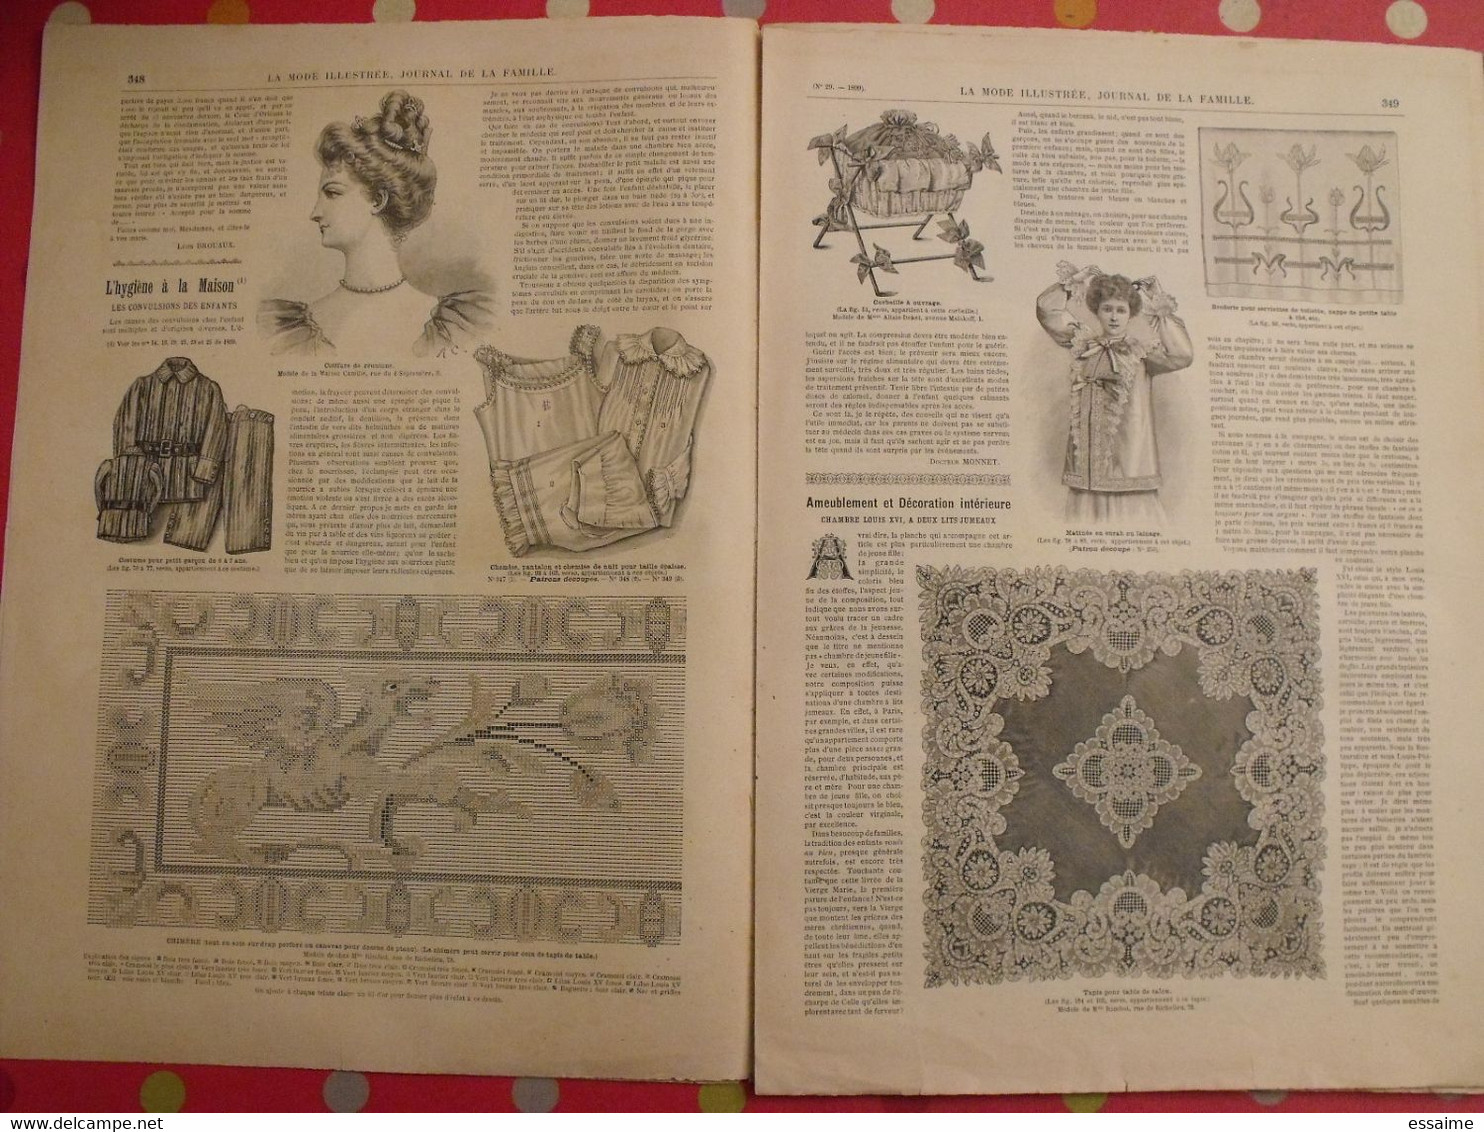 4 revues la mode illustrée, journal de la famille.  n° 29,30,31,32 de 1899. couverture en couleur. jolies gravures